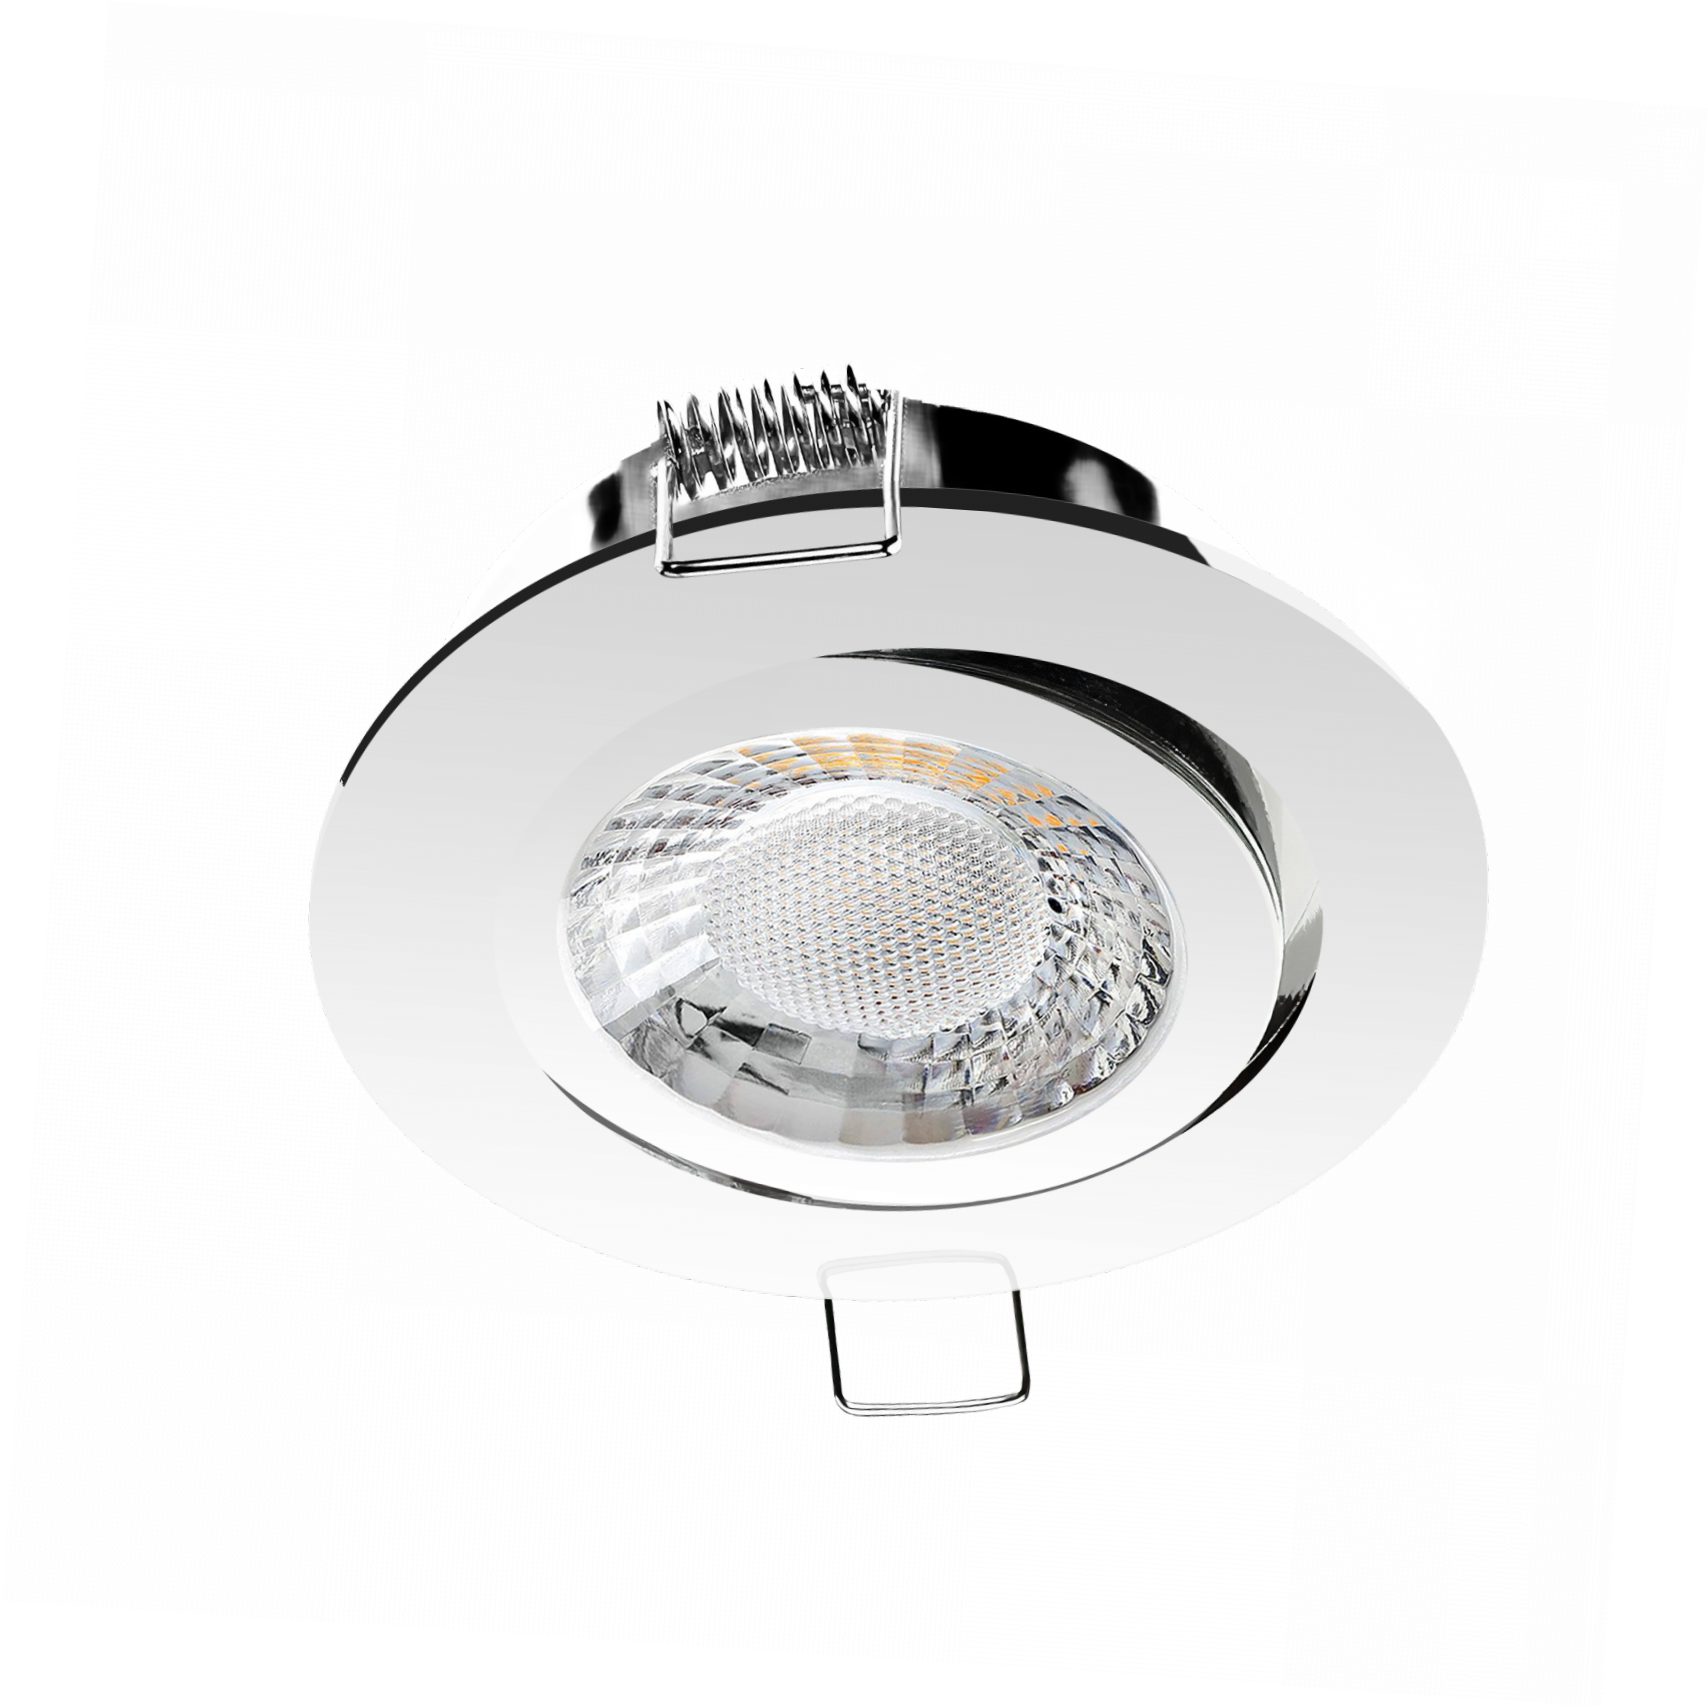 LED Einbaustrahler Chrom glänzend | Runder Einbauspot | 360° schwenkbar | Lochmaß Ø 68mm - 75mm | geringe Einbautiefe 25mm | Anschlussfertig 